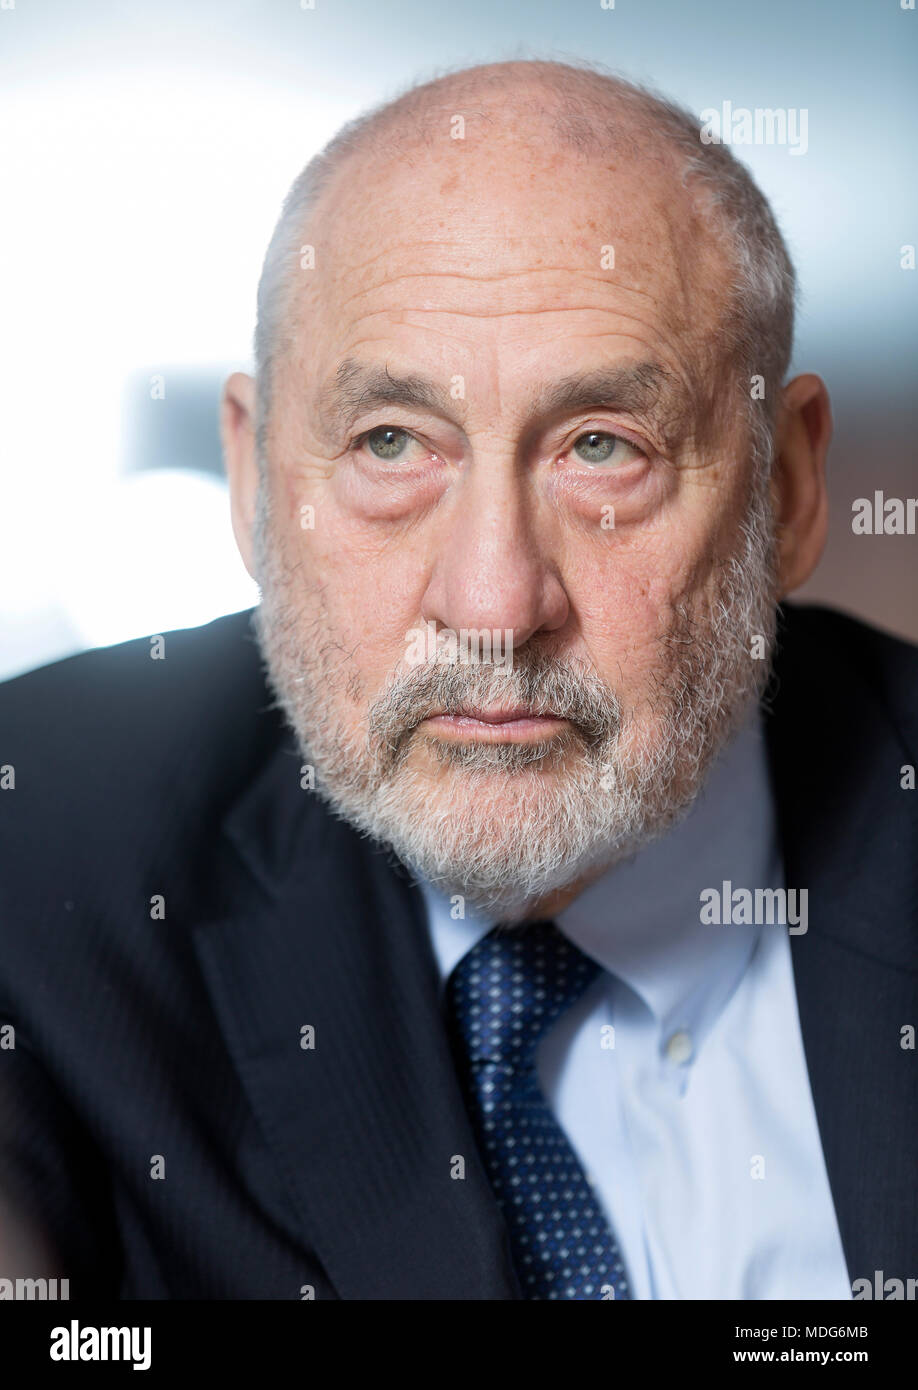 Portrait de Joseph E. Stiglitz, économiste américain, au Parlement européen le 2016/11/16 Banque D'Images